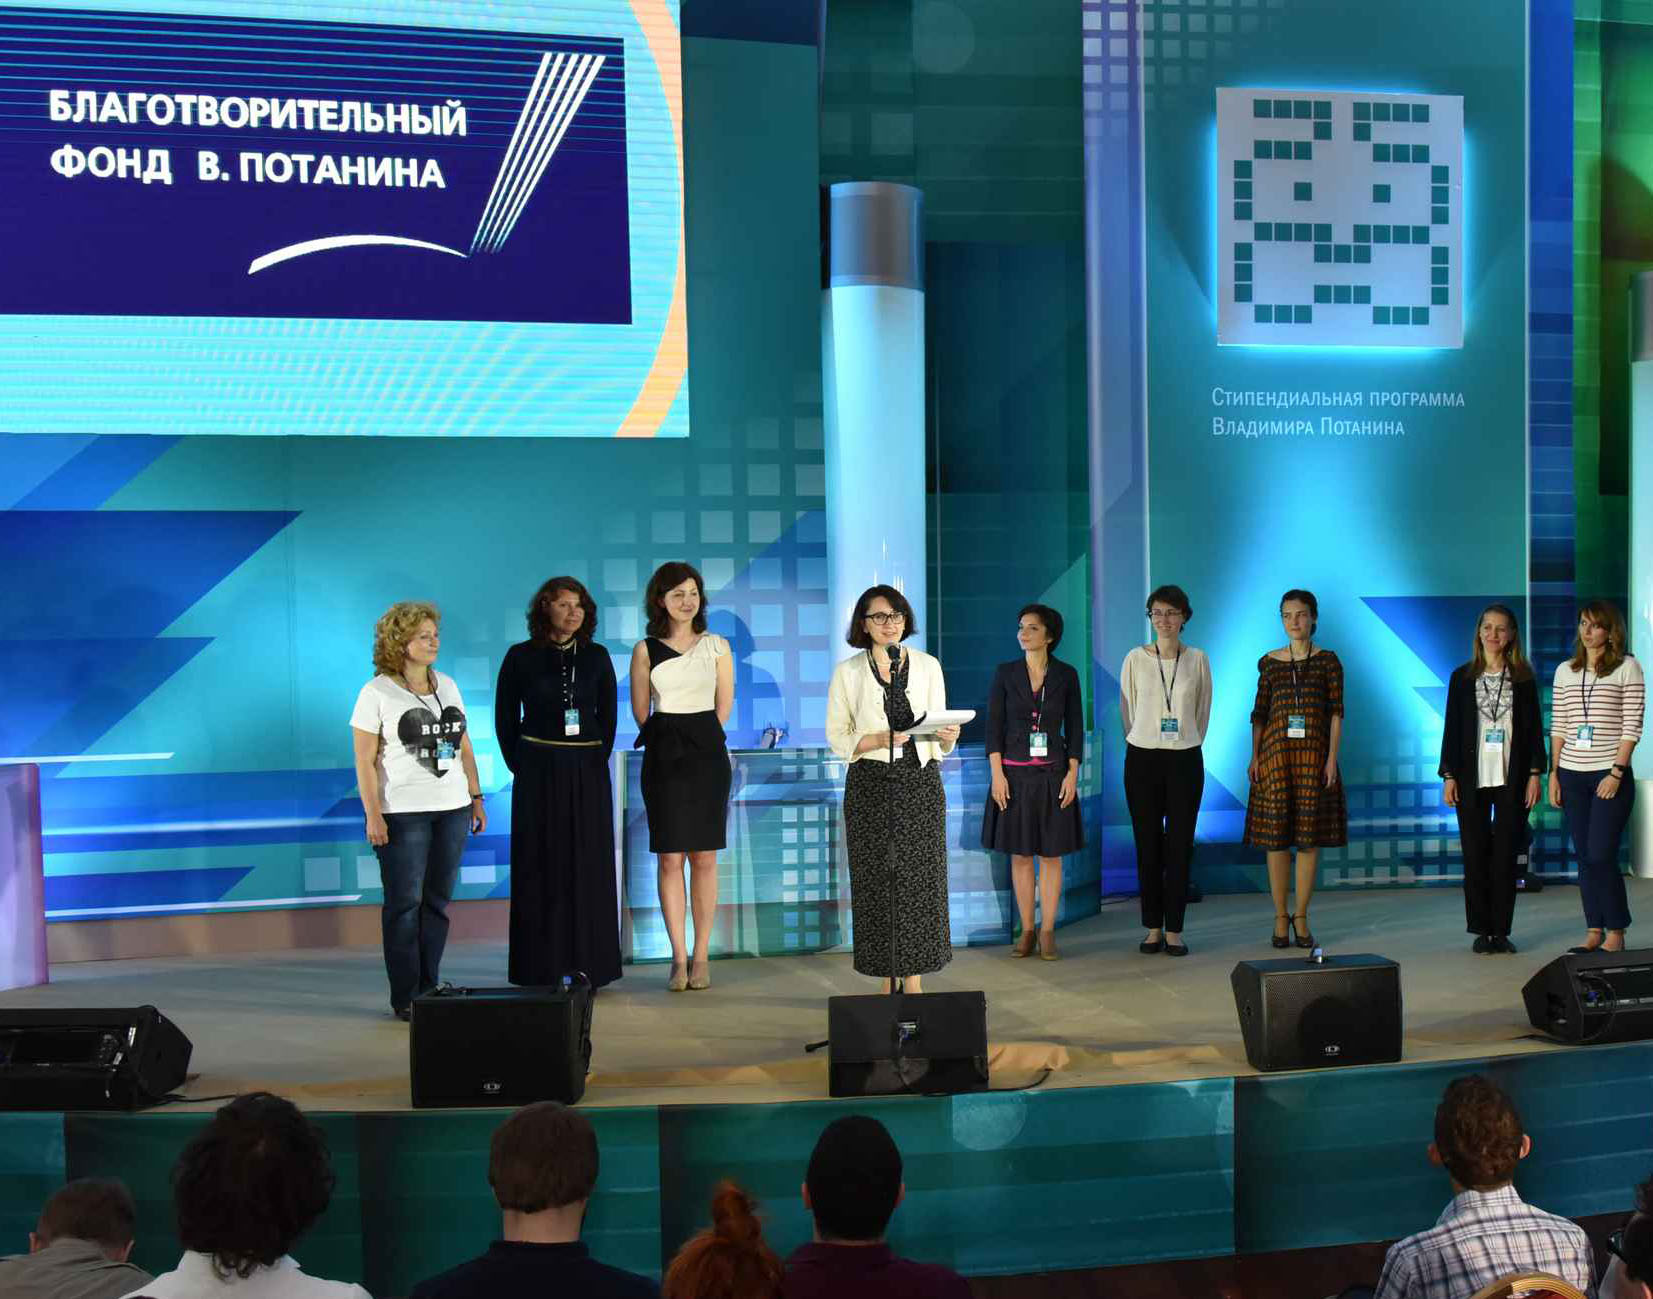 Два новосибирца победили в конкурсе филантропов и альтруистов Фонда Потанина